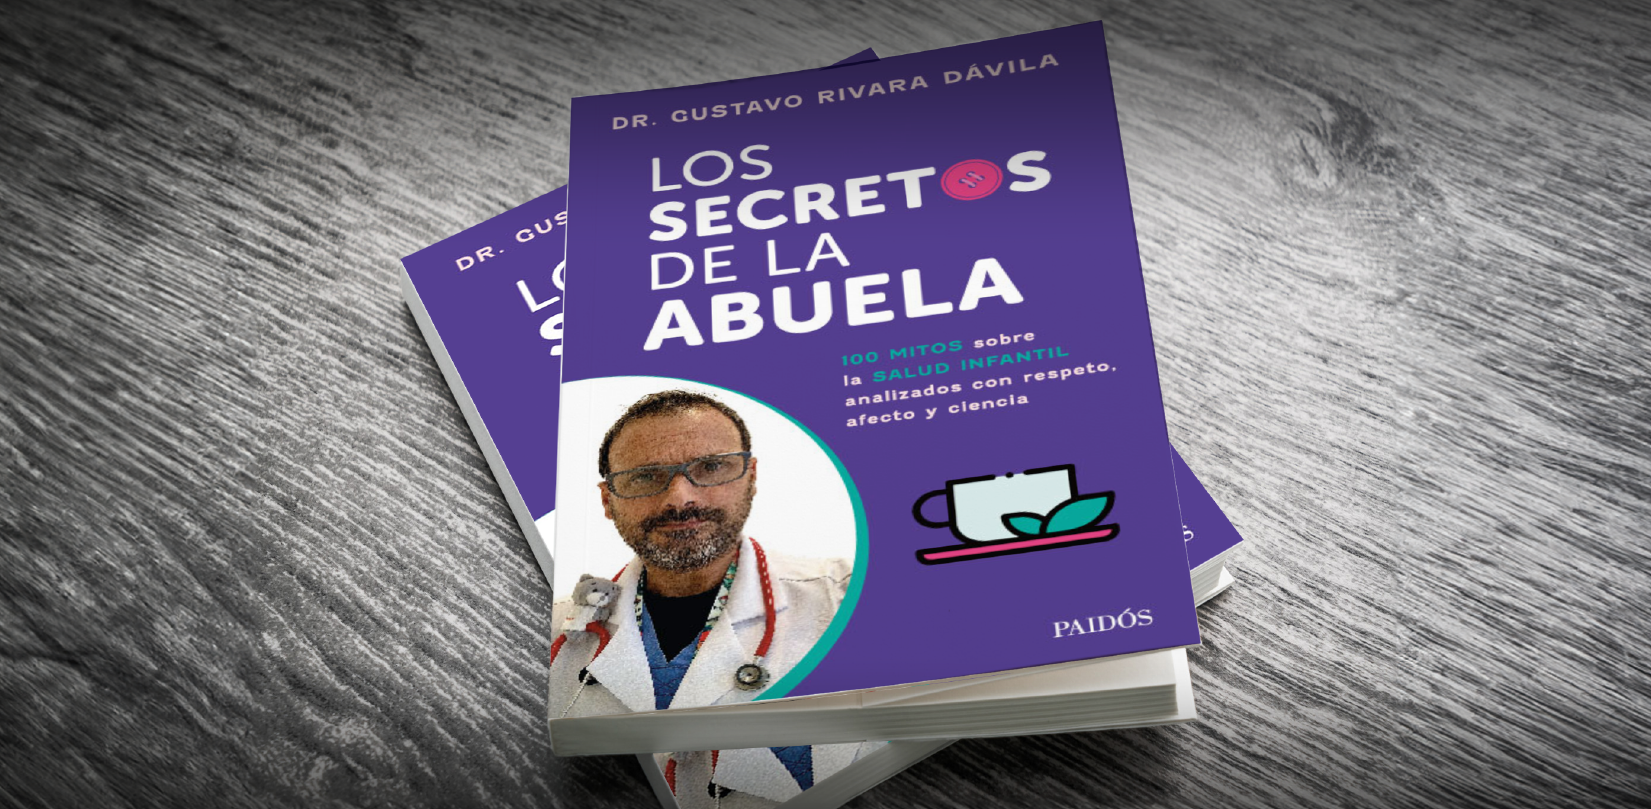 Presentación del libro  “Los secretos de la abuela” del Dr. Gustavo Rivara